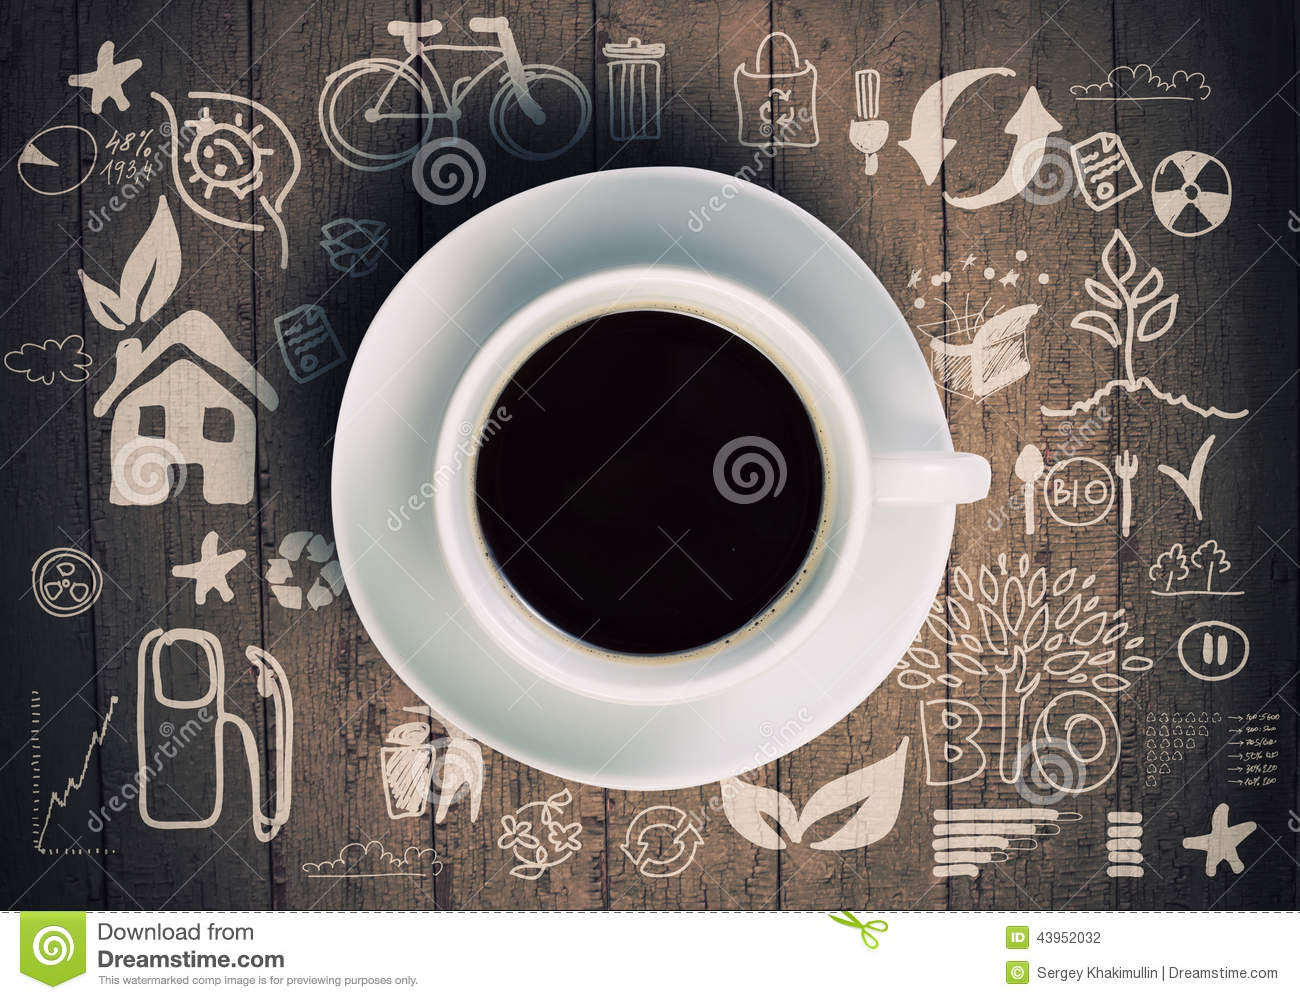 如何使用咖啡生豆製作一杯香濃的意式濃縮咖啡 ( Espresso )？